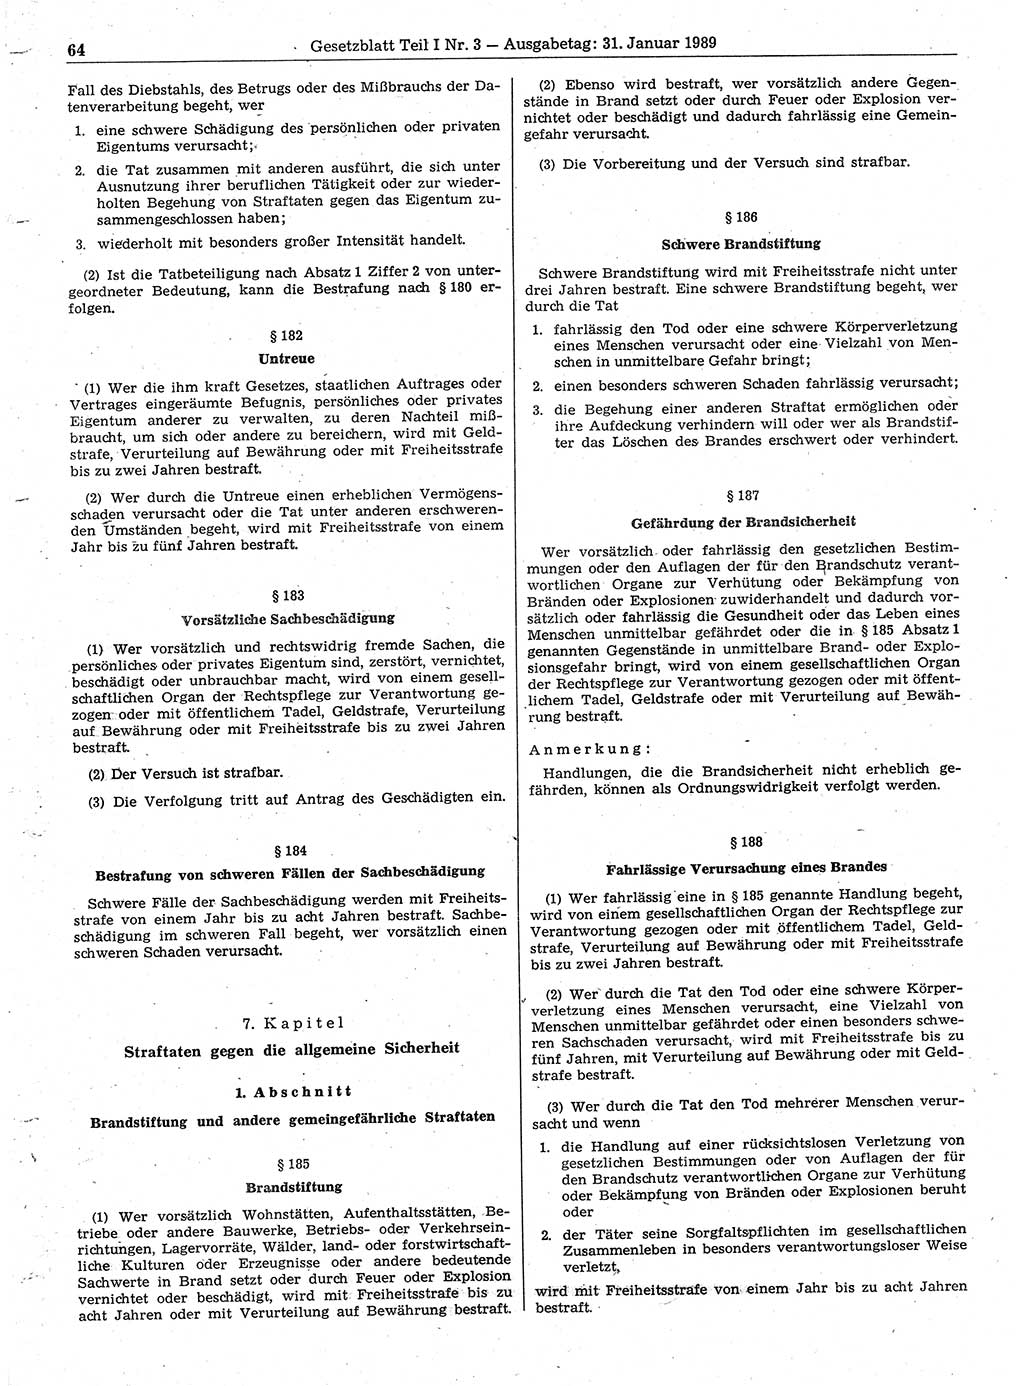 Gesetzblatt (GBl.) der Deutschen Demokratischen Republik (DDR) Teil Ⅰ 1989, Seite 64 (GBl. DDR Ⅰ 1989, S. 64)